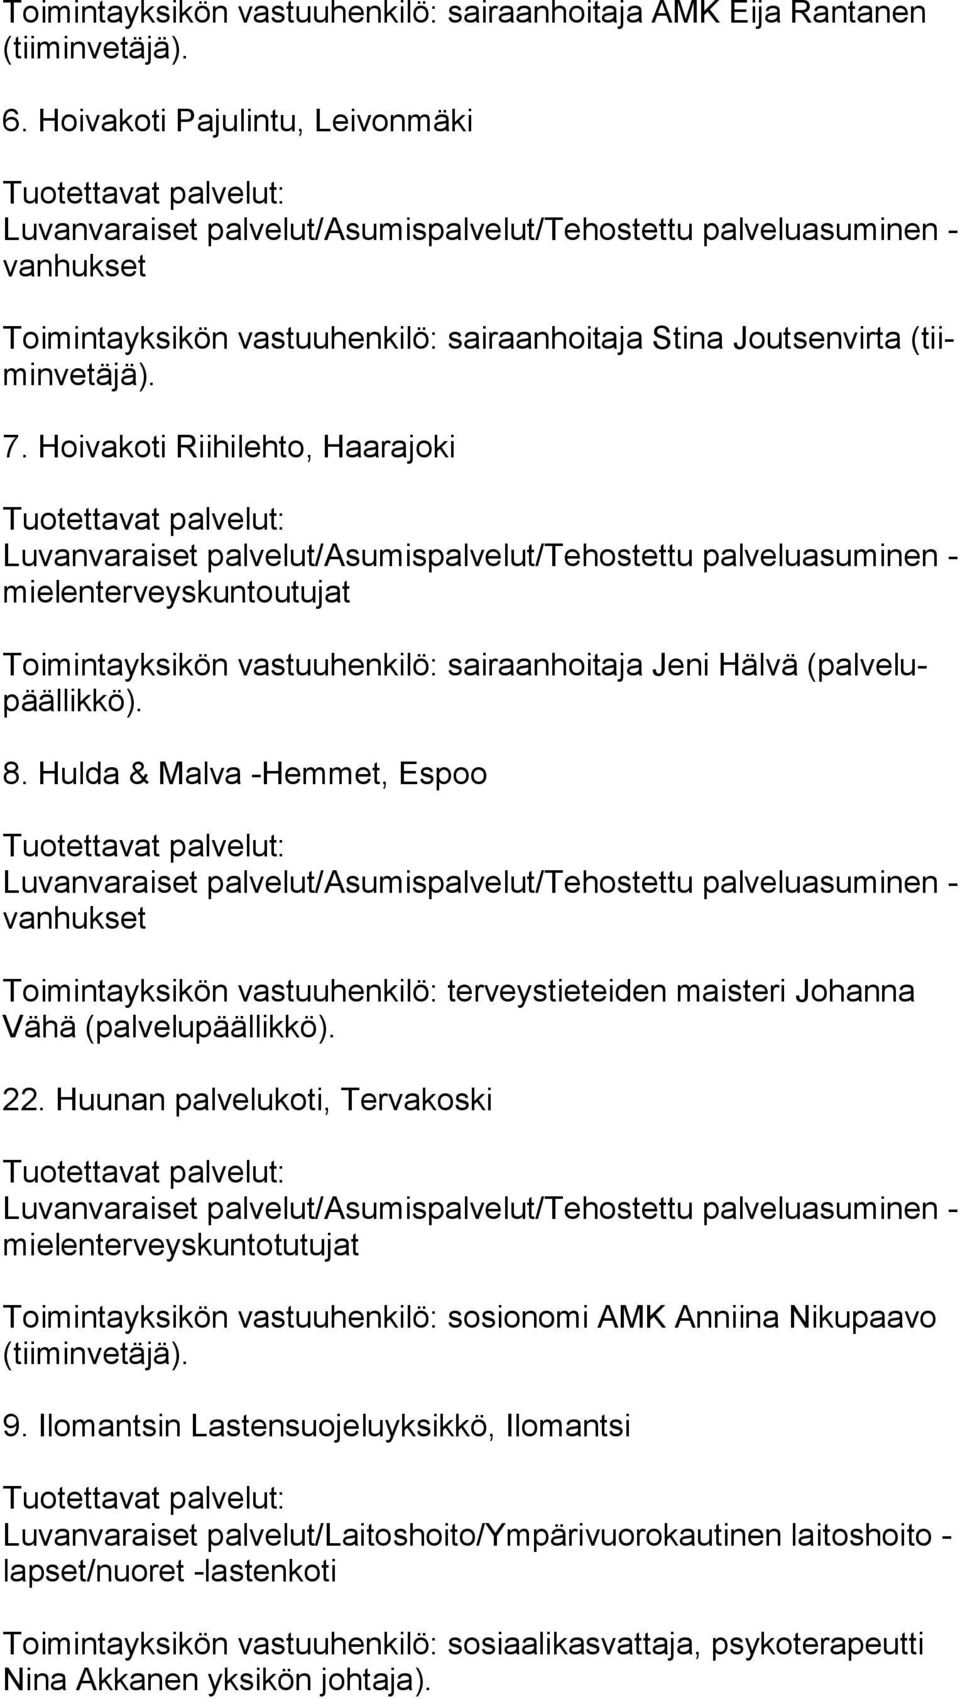 Hoivakoti Riihilehto, Haarajoki mie len ter veys kun tou tu jat Toimintayksikön vastuuhenkilö: sairaanhoitaja Jeni Hälvä (pal ve lupääl lik kö). 8.